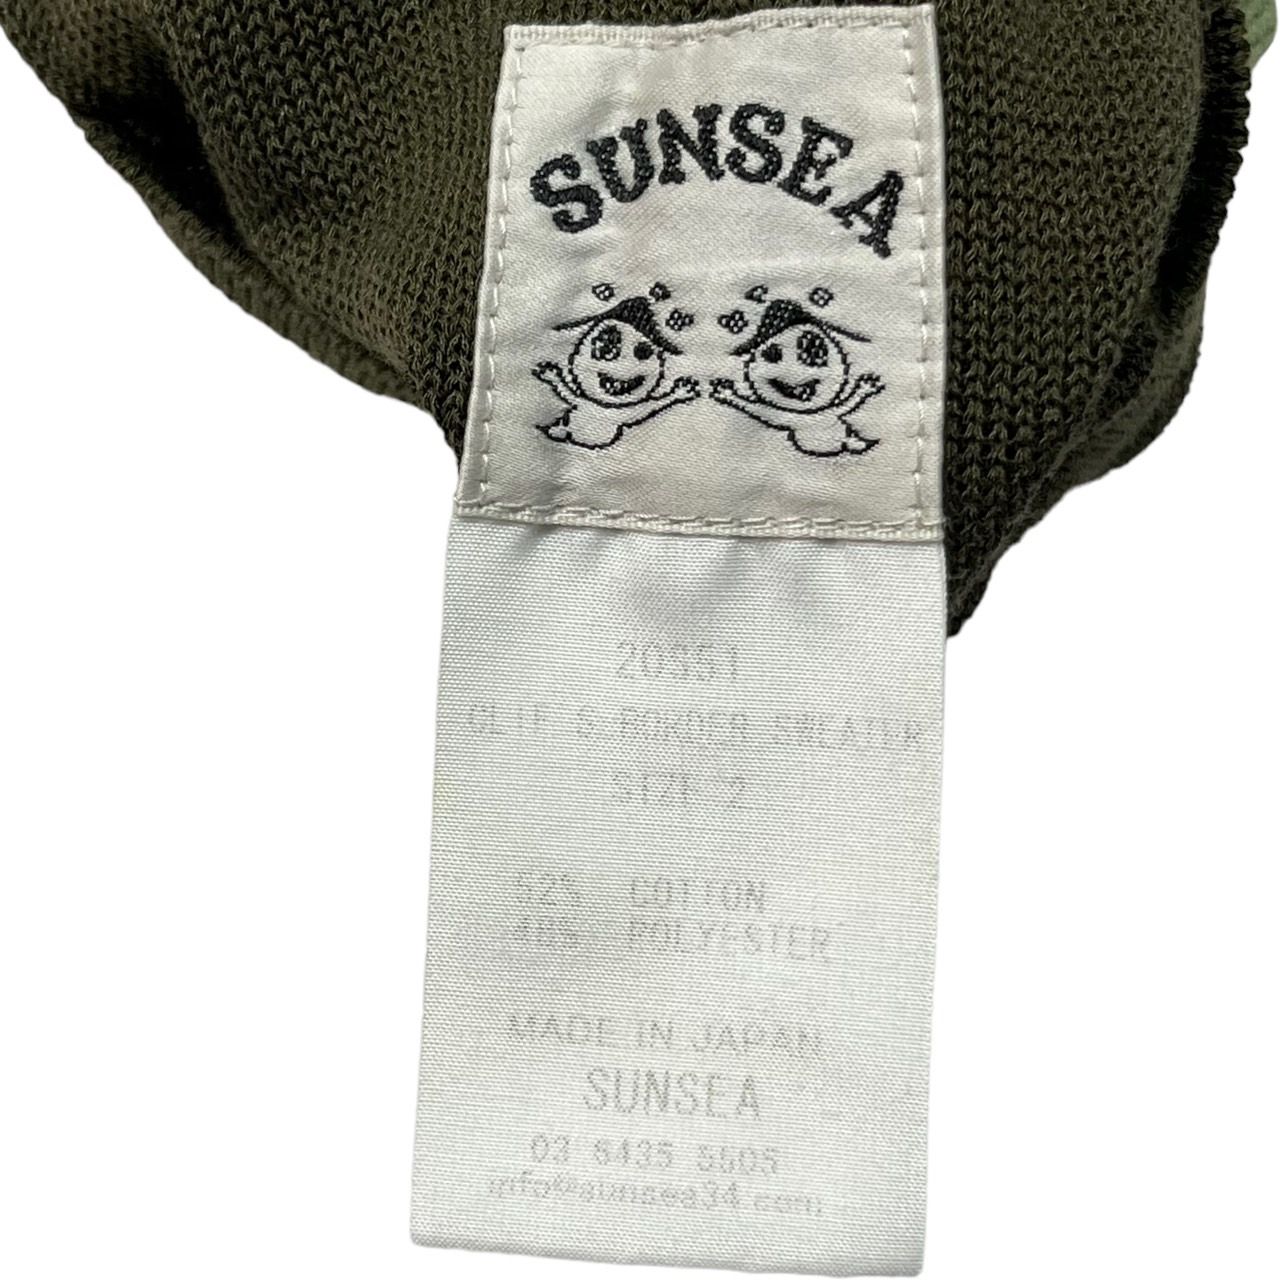 SUNSEA(サンシー) 20SS CLIFs Border Sweater/ボーダーセーター/半袖ニット 20S51 SIZE 2(M) ベージュ×カーキ×ライトグリーン  - メルカリ